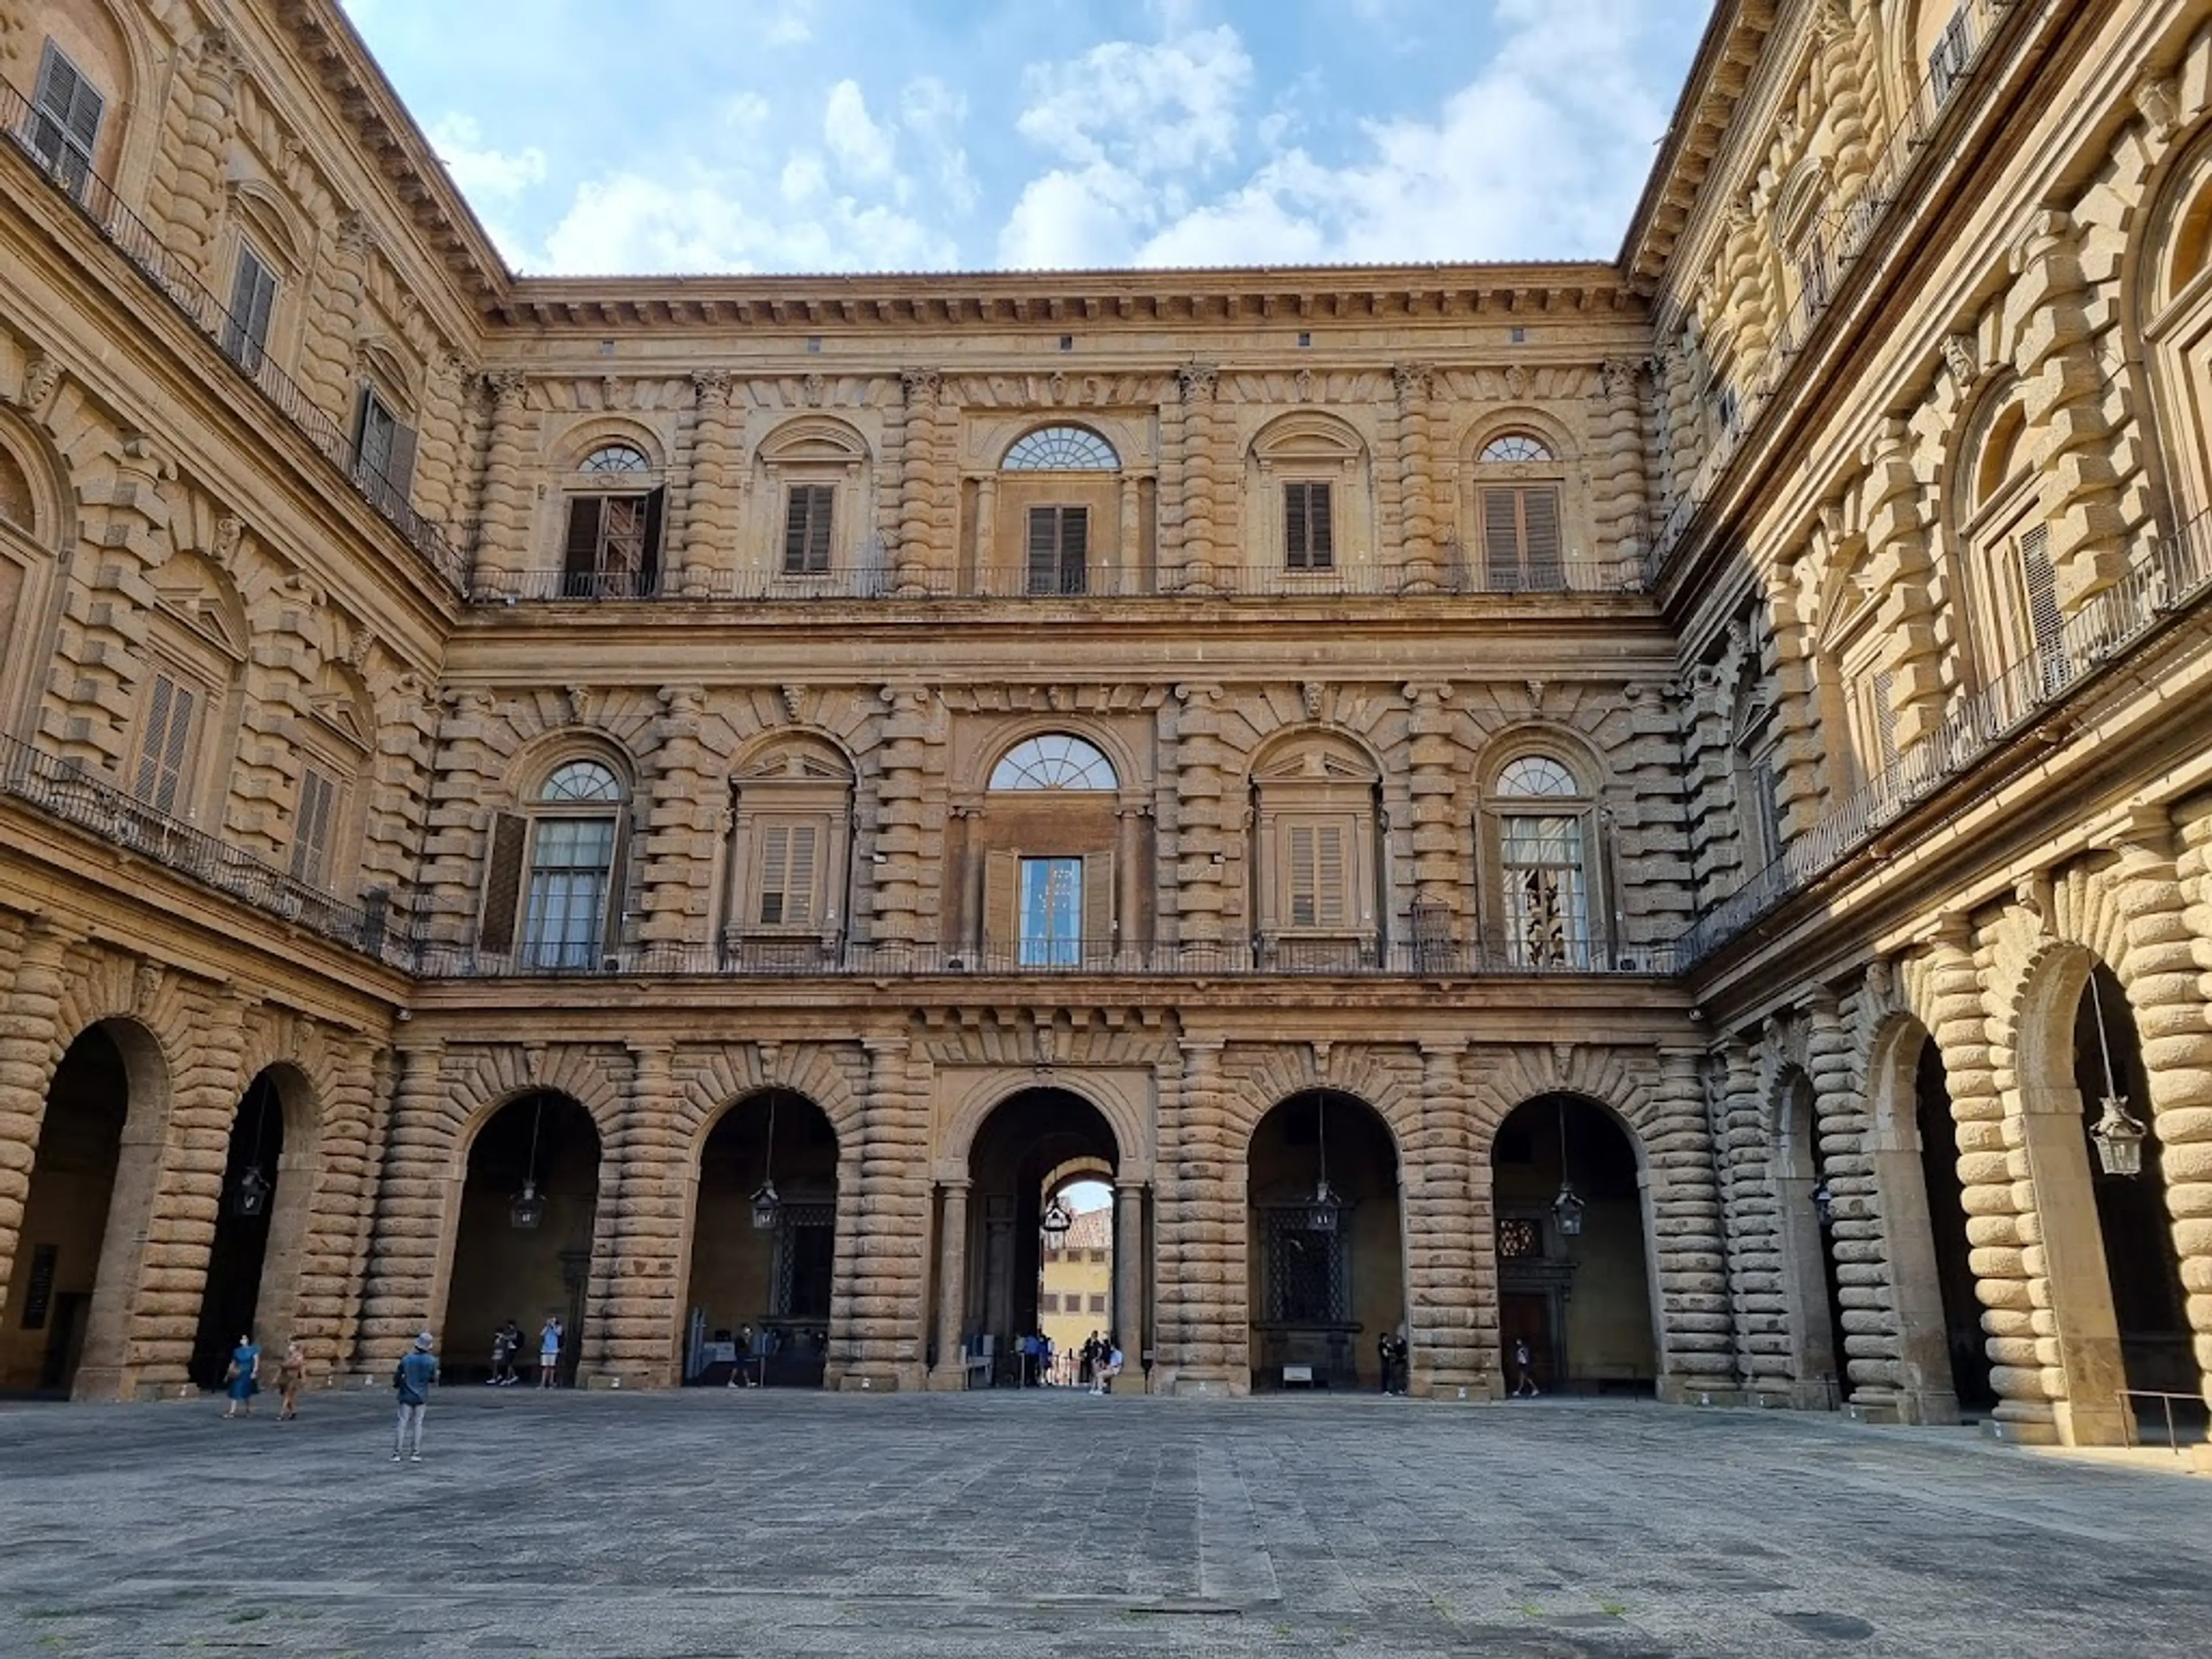 Pitti Palace and Boboli Gardens